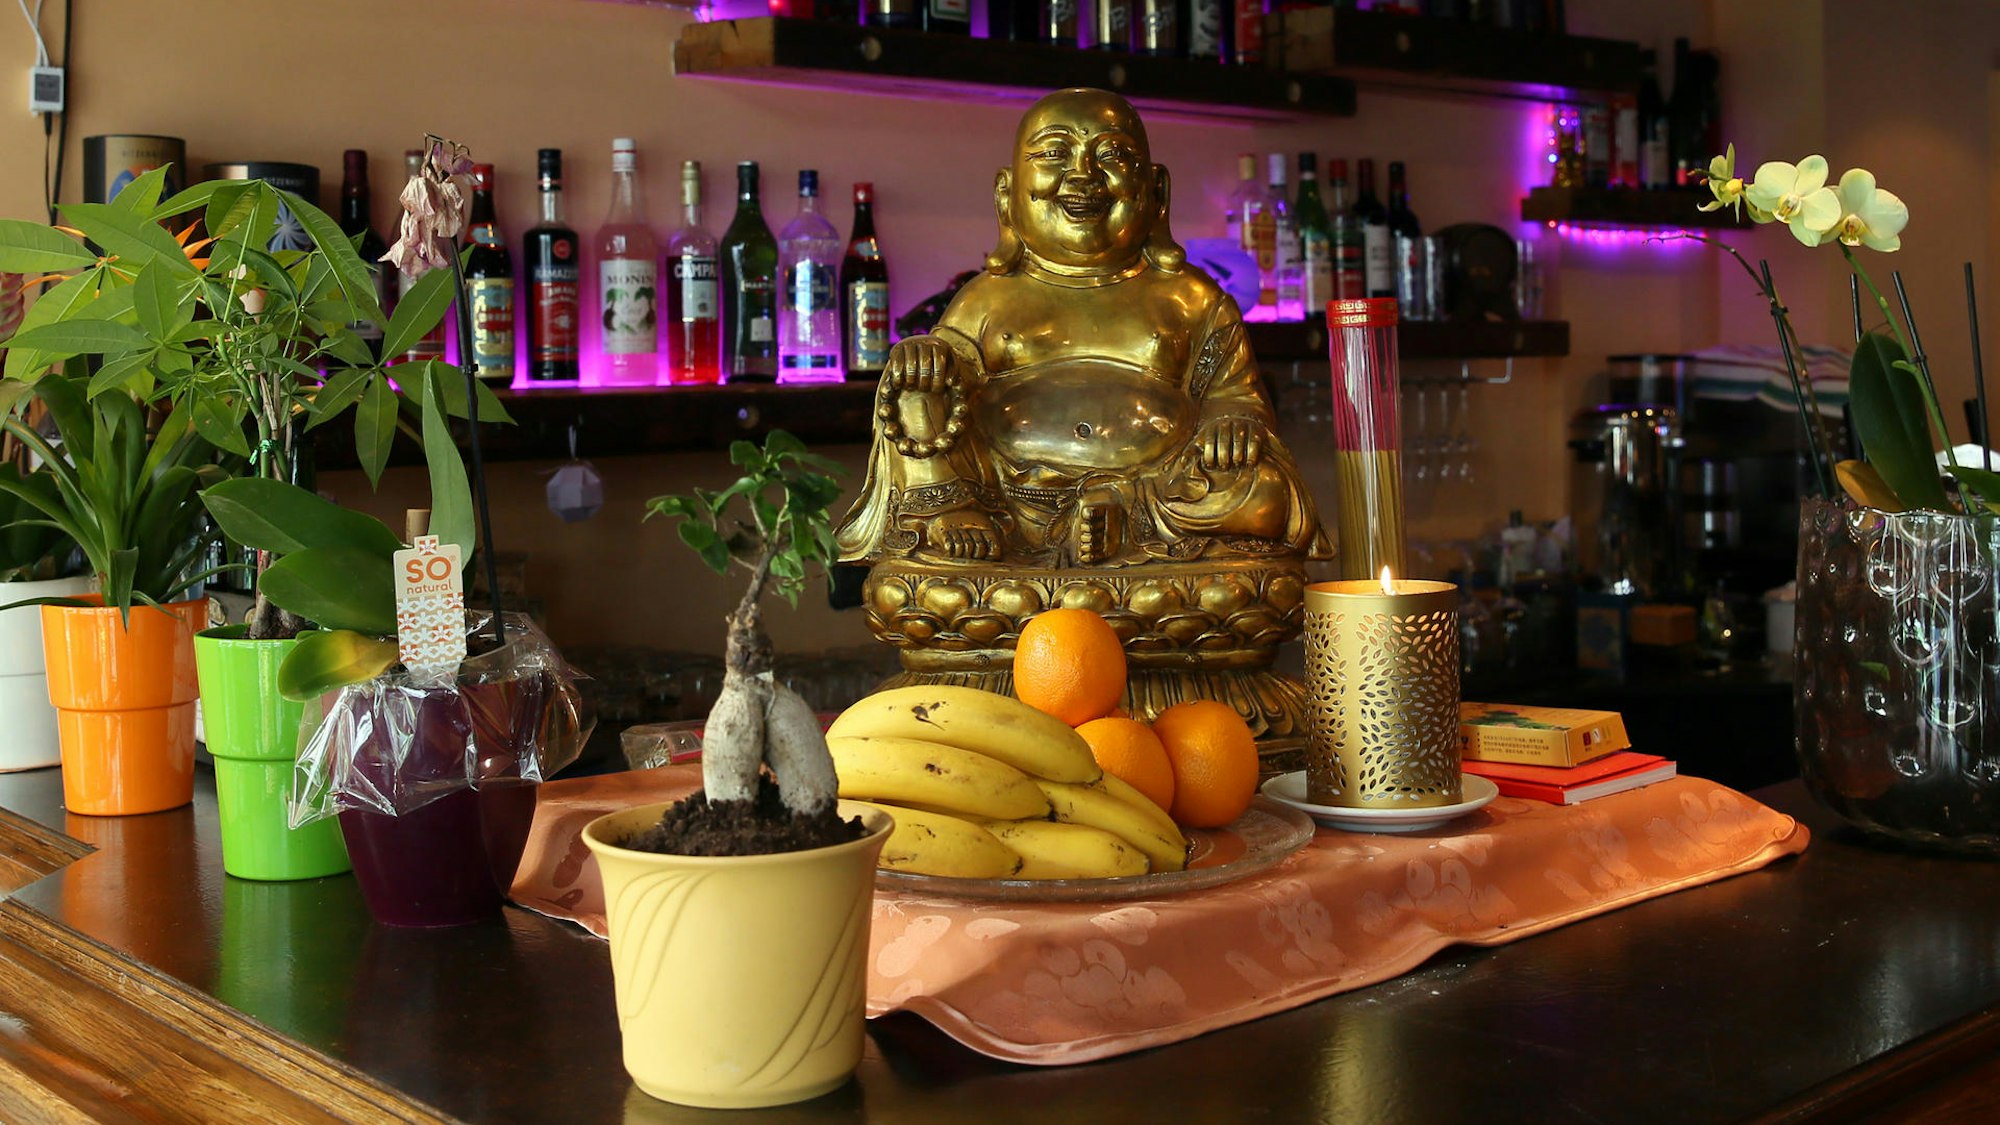 auf einer Theke steht ein goldener Buddha, davor eine Obstschale, links Töpfe mit Pflanzen